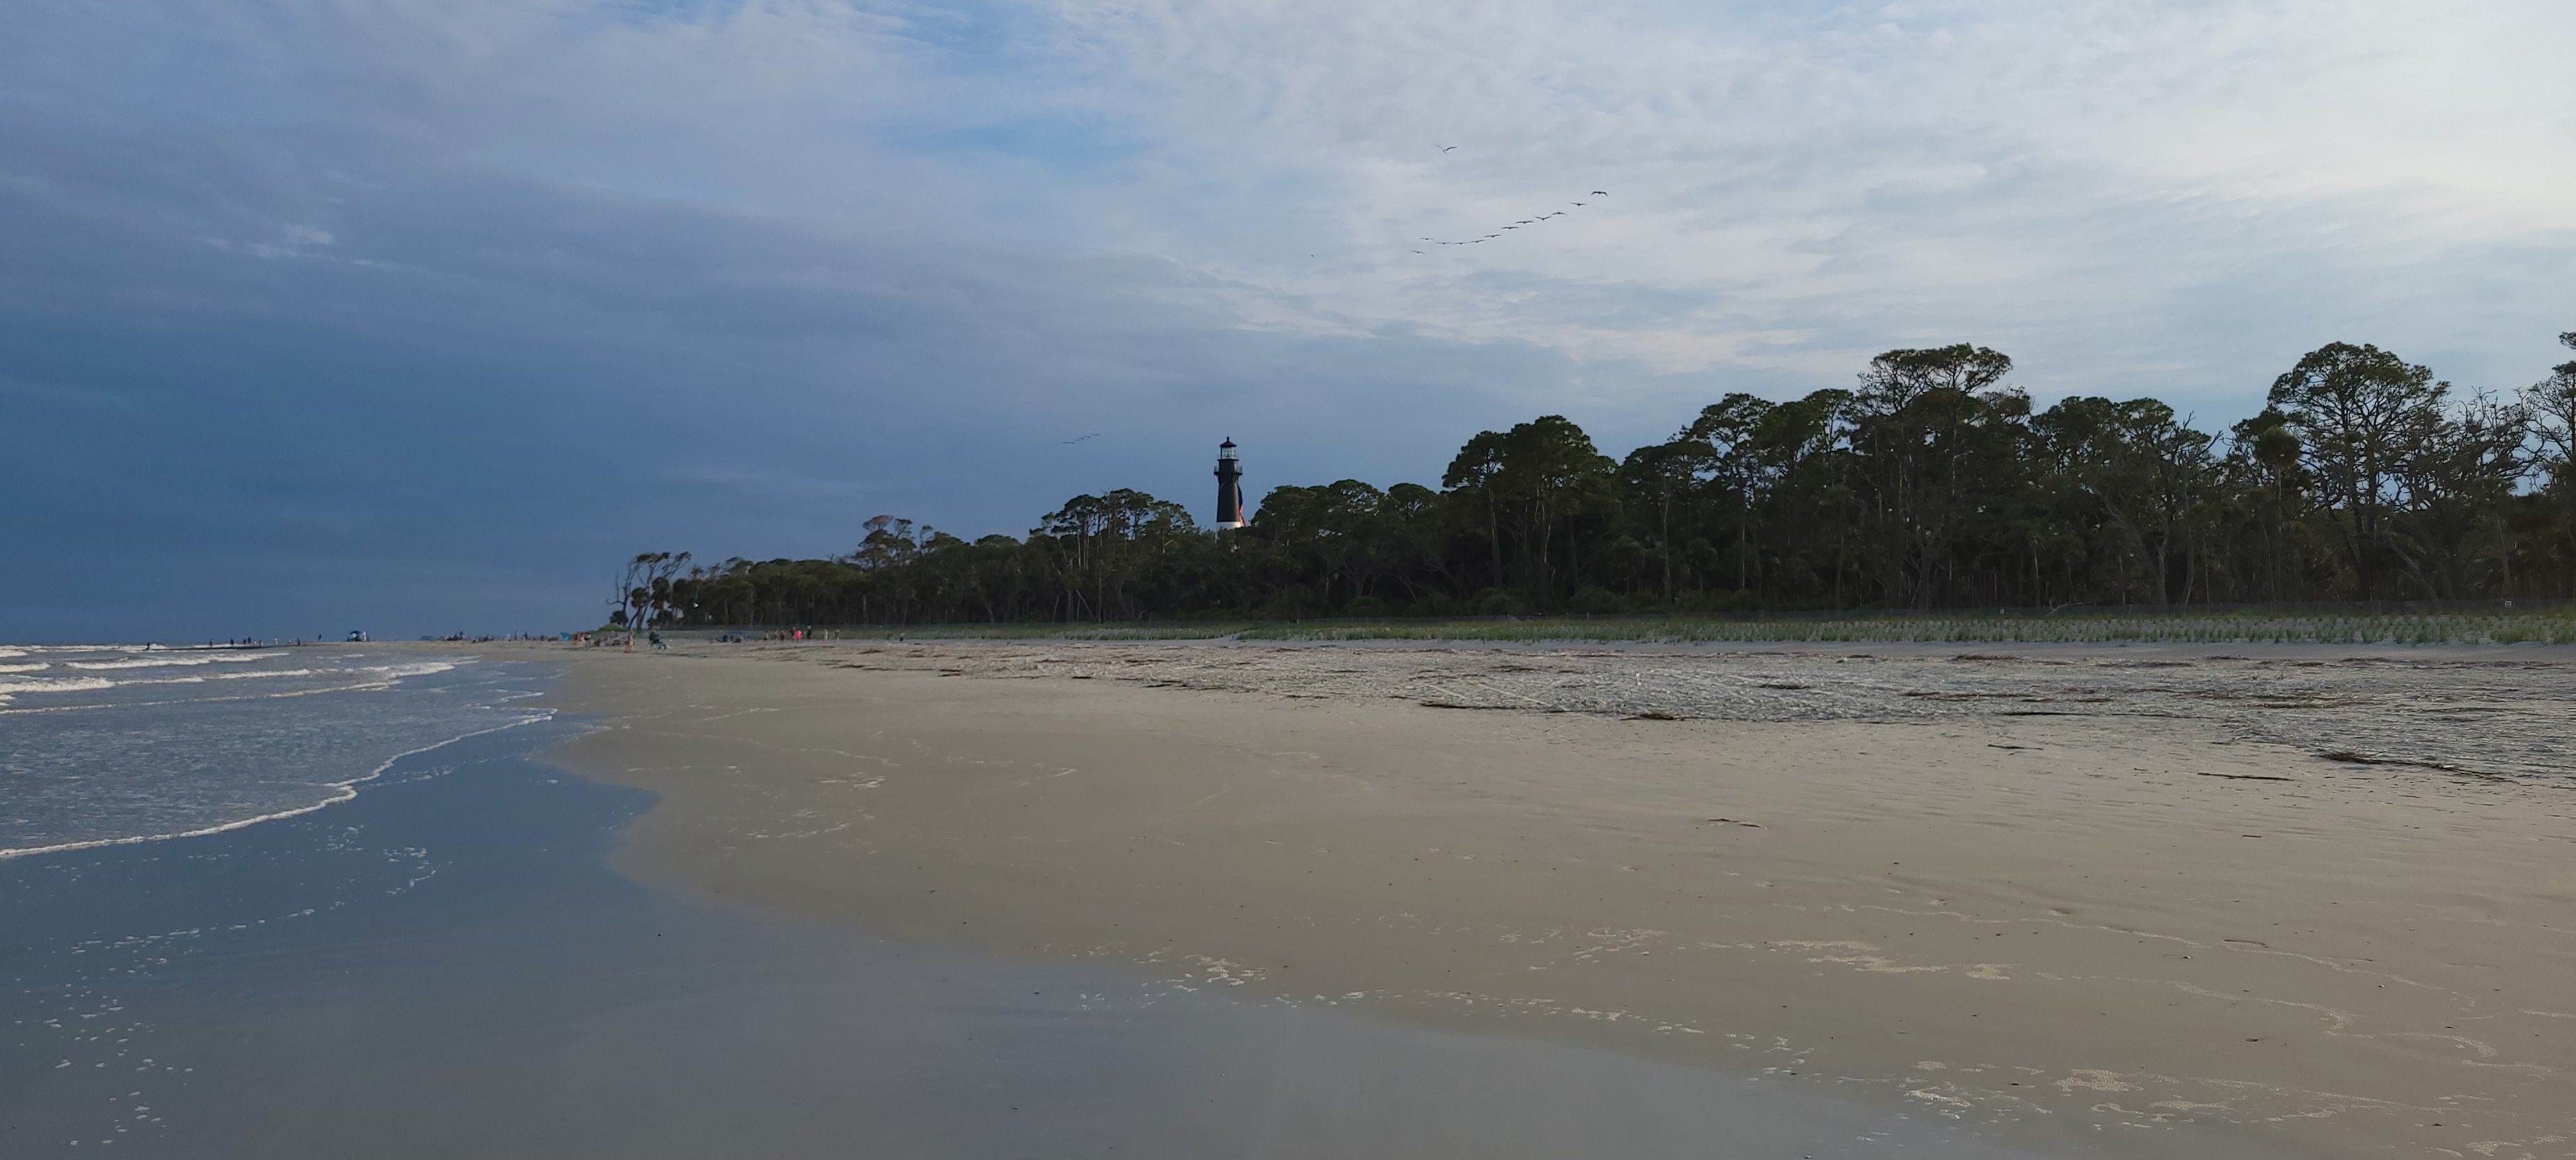 Lighthouse with beach